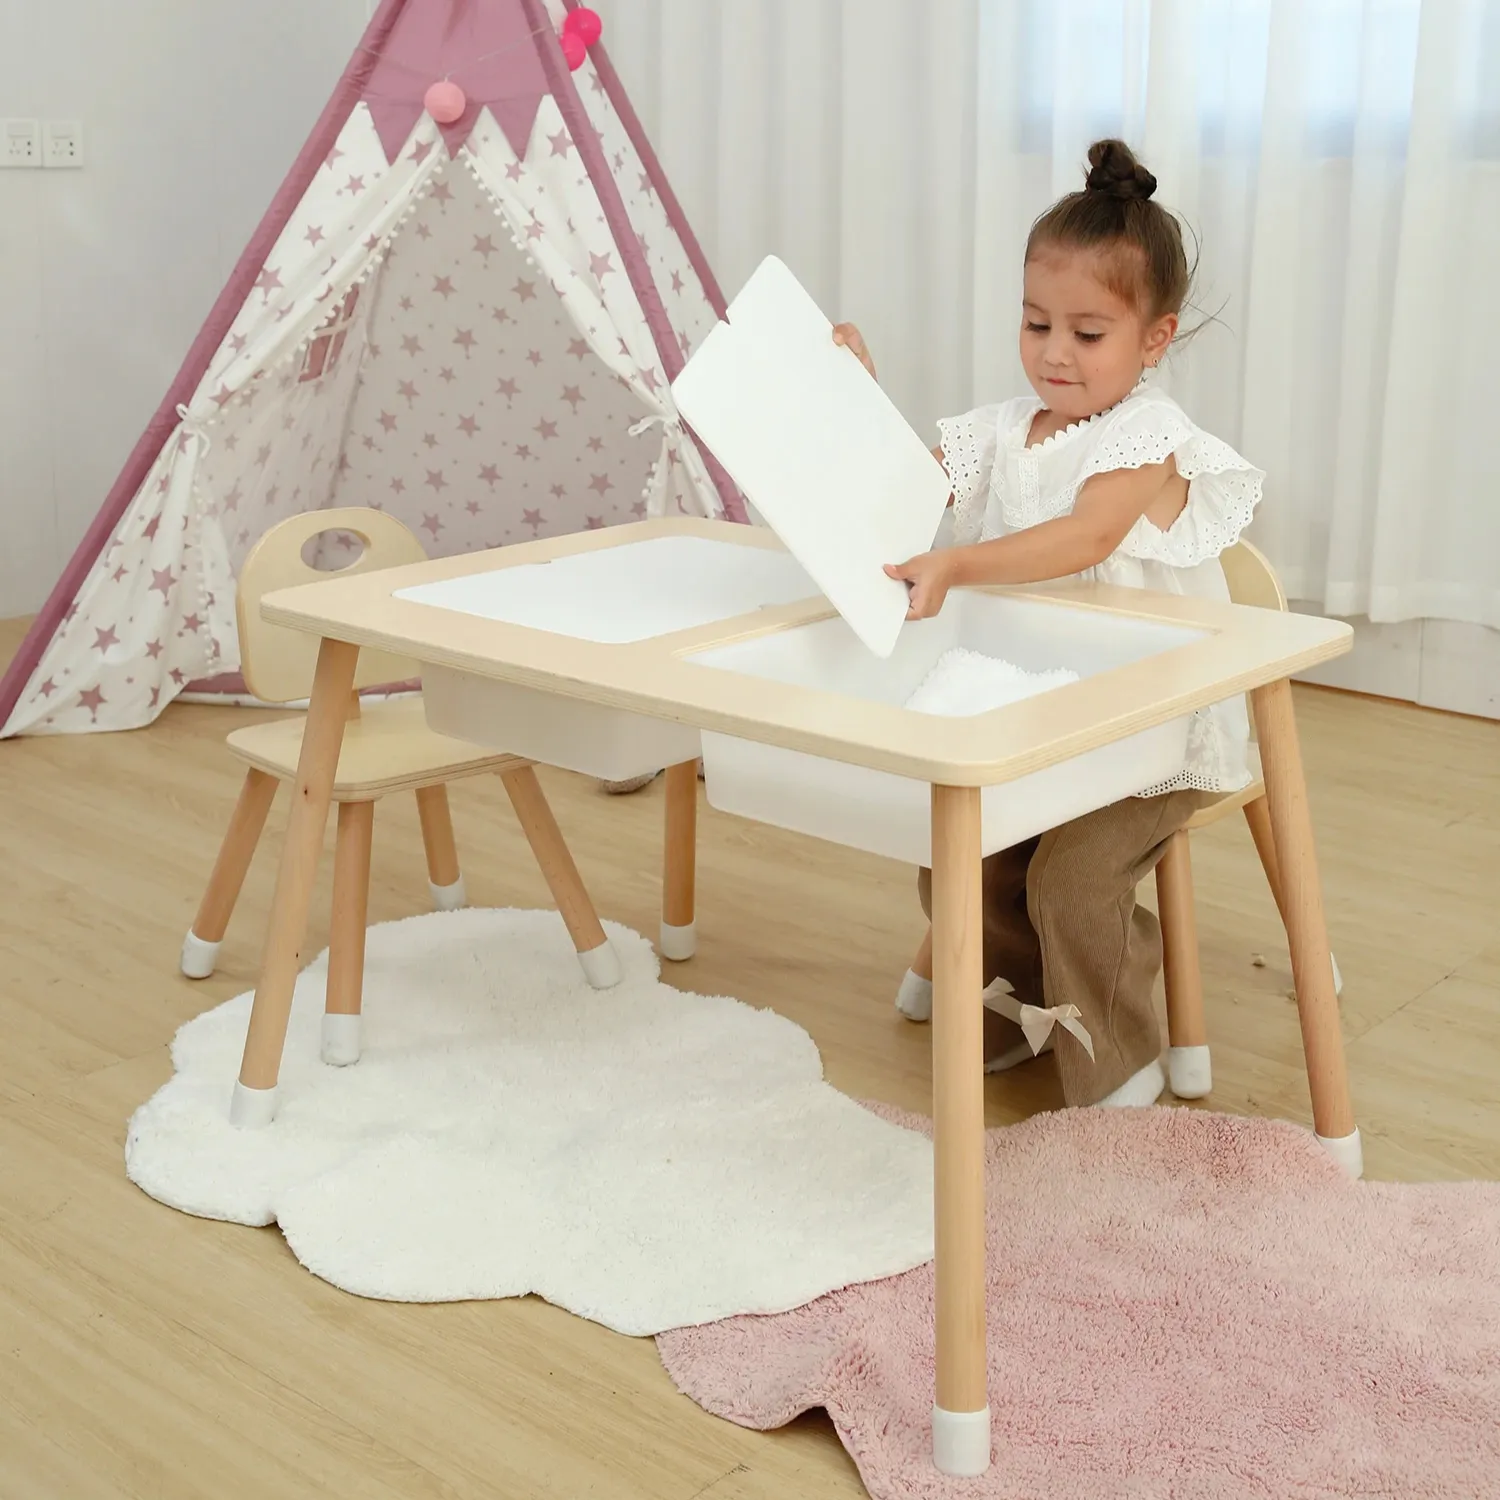 Ensemble de meubles Montessori en bois pour enfants d'âge préscolaire, Table de jeu pour activités sensorielles éducatives, Table de sable et d'eau pour enfants